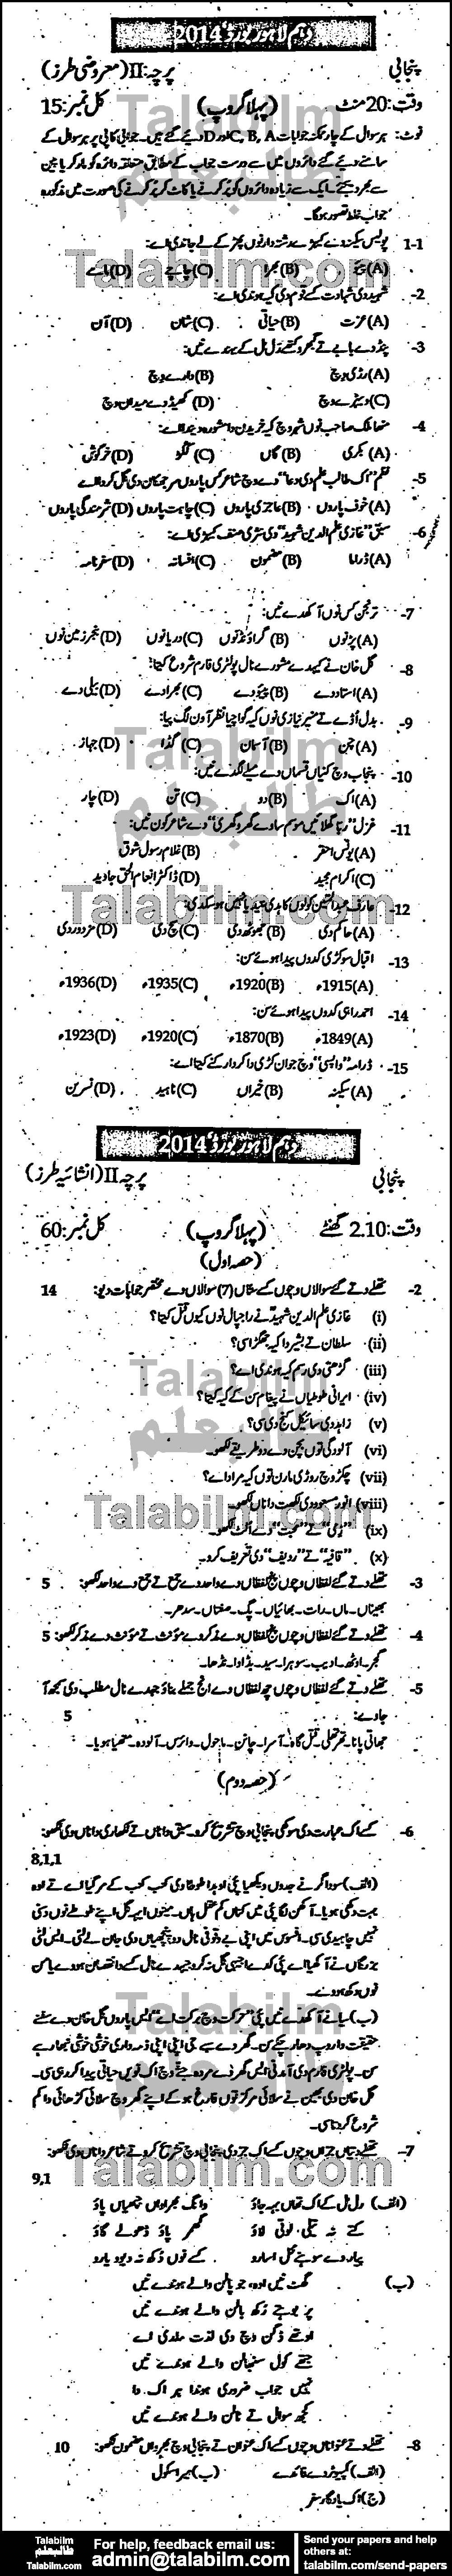 Punjabi 0 past paper for Urdu Medium 2014 Group-I